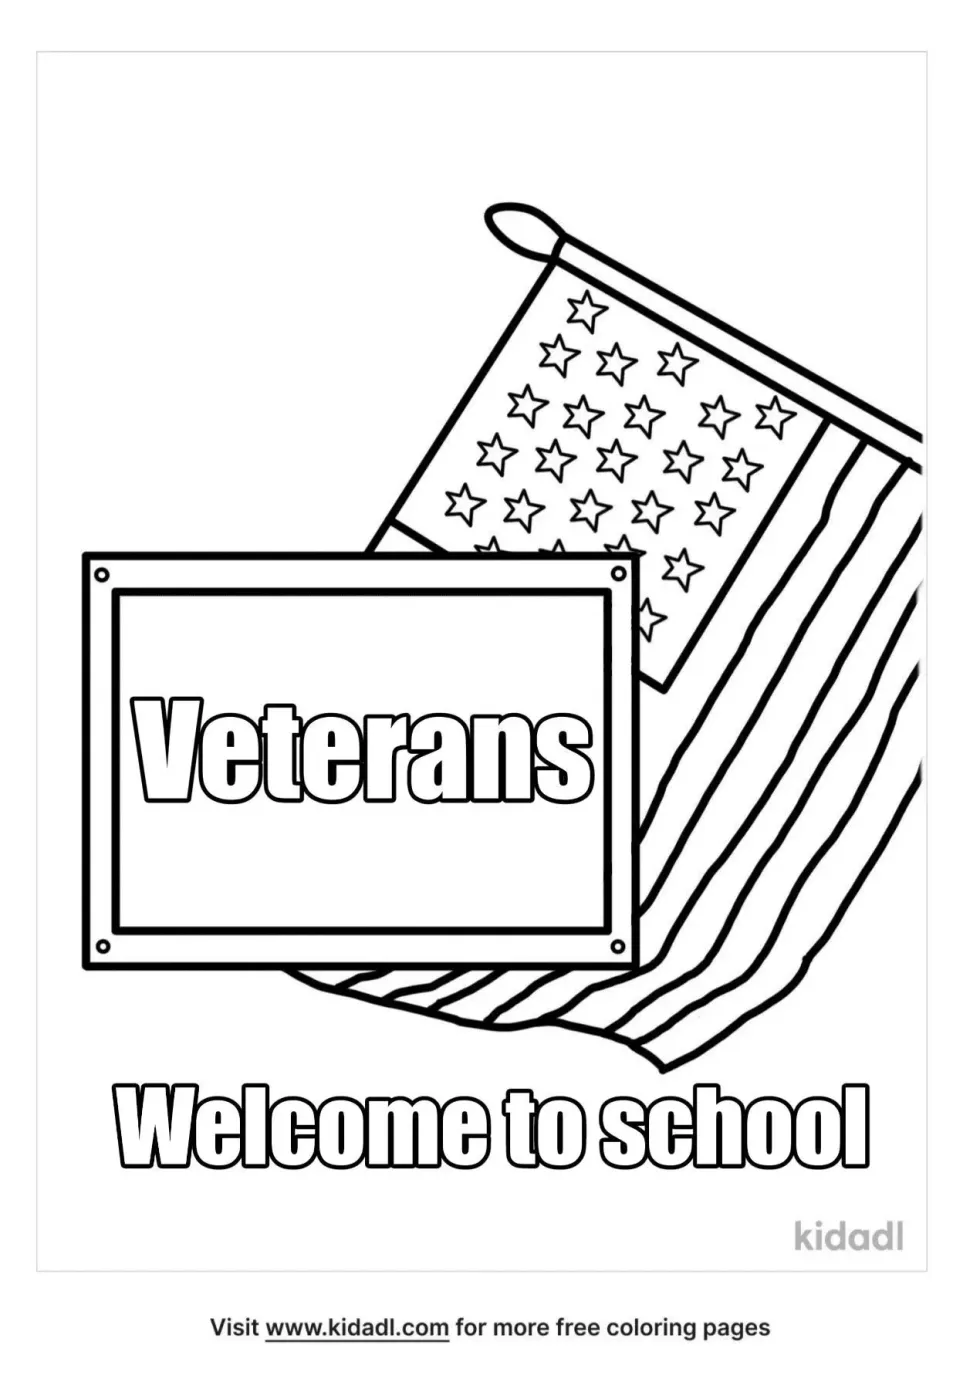 Welcome "veterans To School